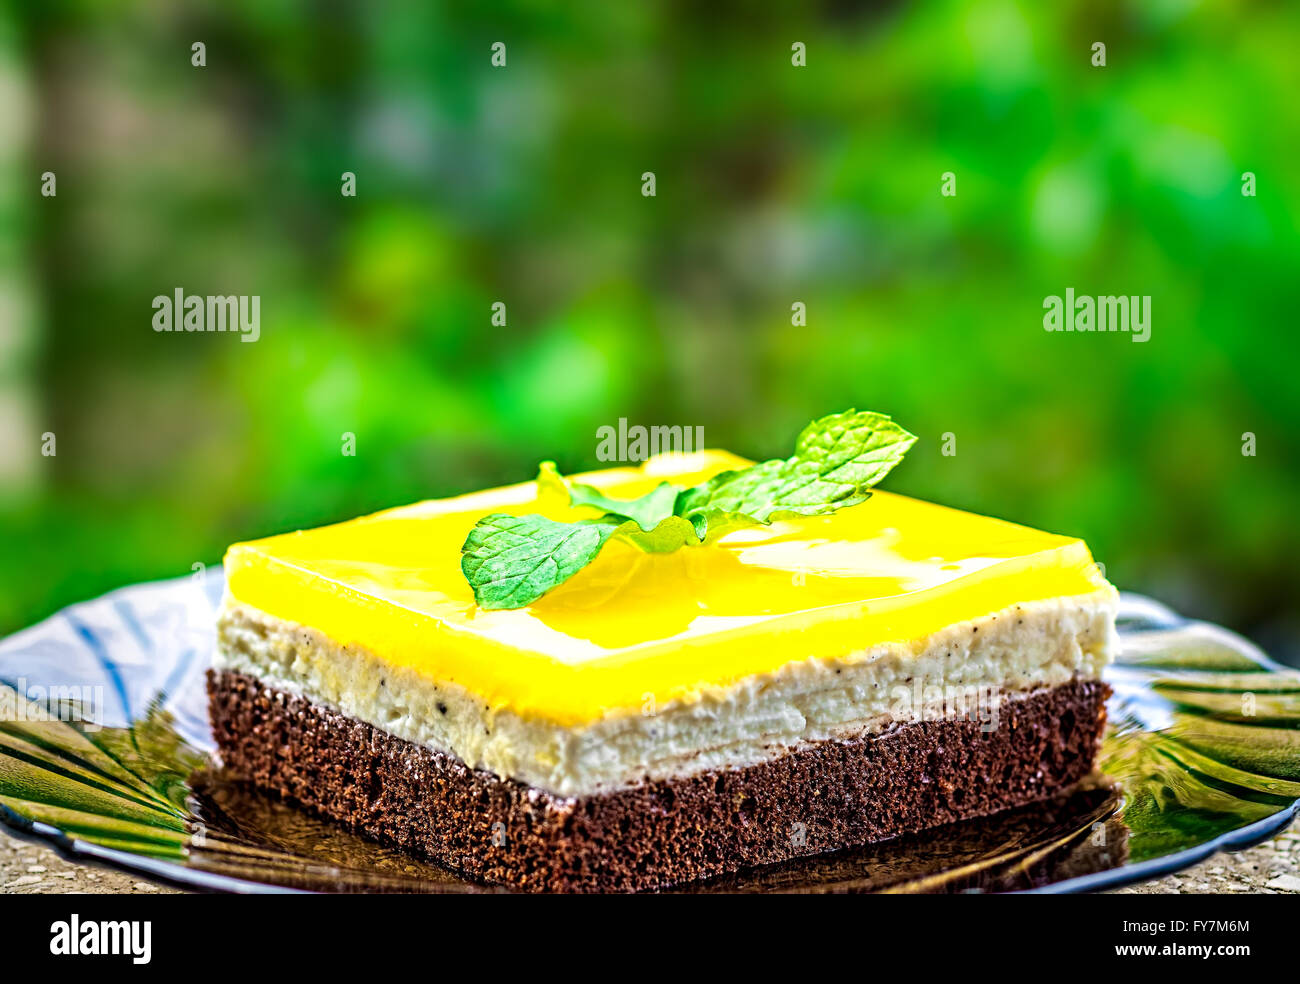 Vue latérale d'éponge chocolat, fromage à la crème et le jus d'orange jello topping gâteau décoré de feuilles de menthe contre un lecteur blu Banque D'Images